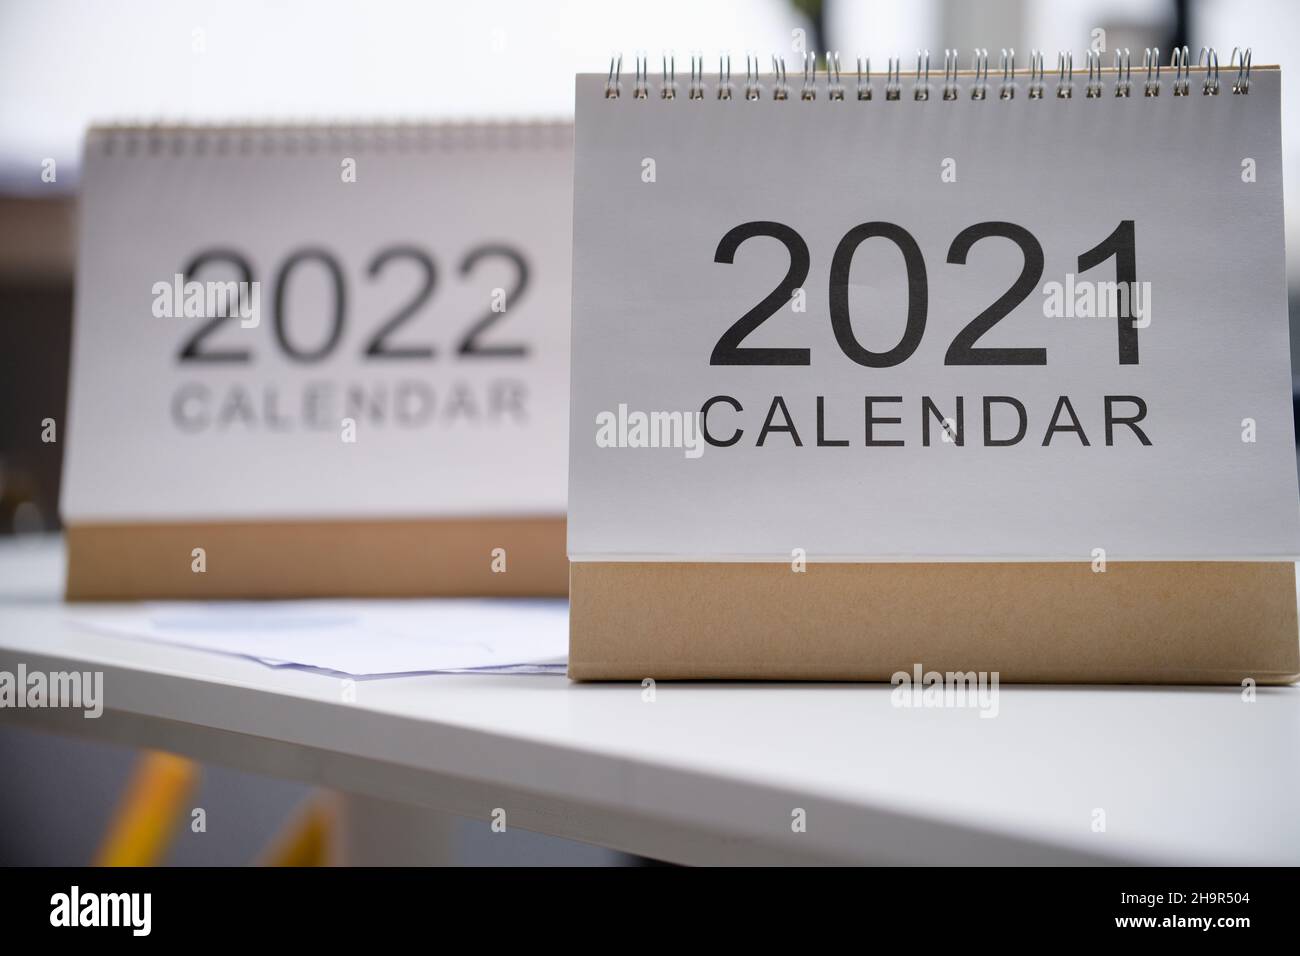 Calendario 2021 y 2022 en el primer plano de la mesa. Próximo año nuevo y la planificación de las tareas empresariales Foto de stock